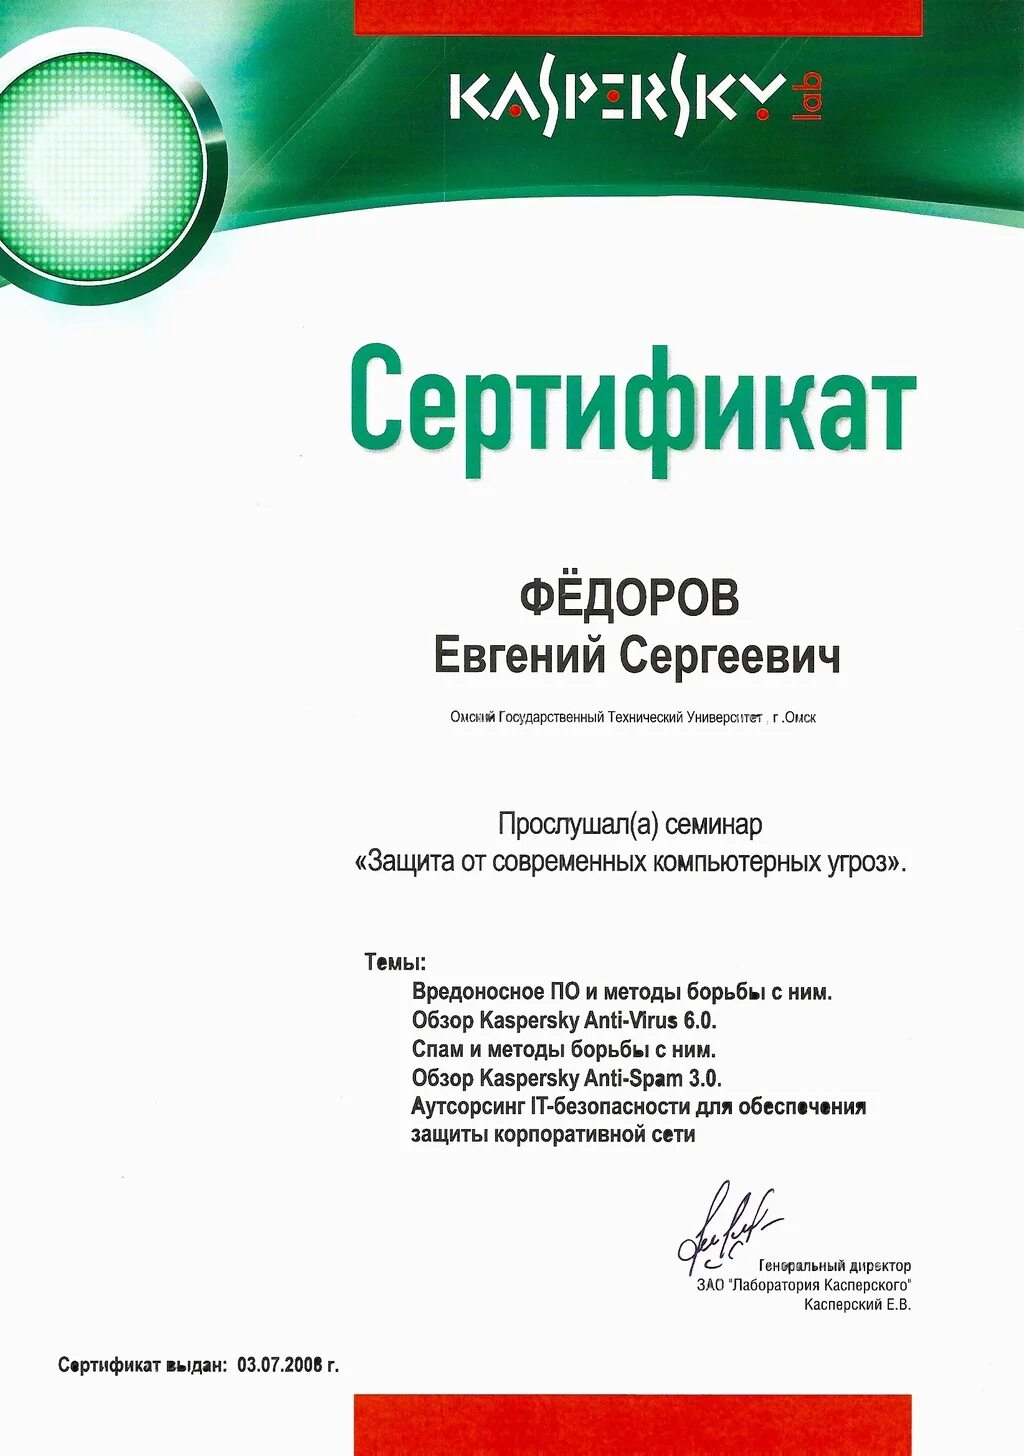 Сертификат Касперский. Лаборатория Касперского сертификаты. Сертификат антивируса Касперского. Сертификат лицензии Касперского.